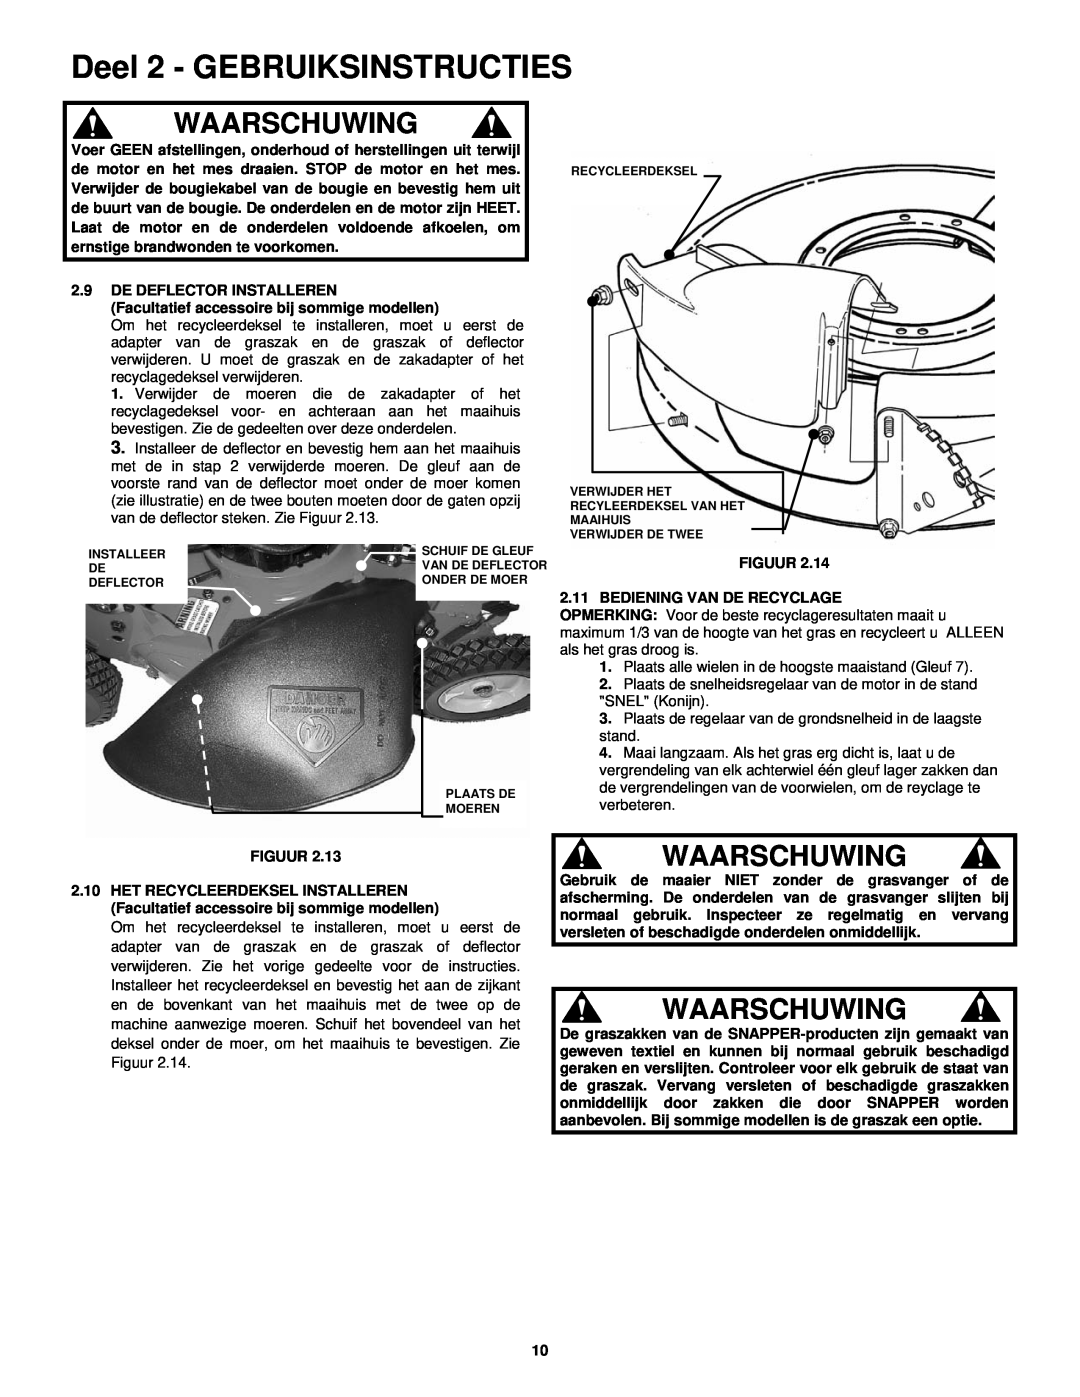 Snapper ERP217019BV manual Deel 2 - GEBRUIKSINSTRUCTIES, Waarschuwing, Plaats alle wielen in de hoogste maaistand Gleuf 